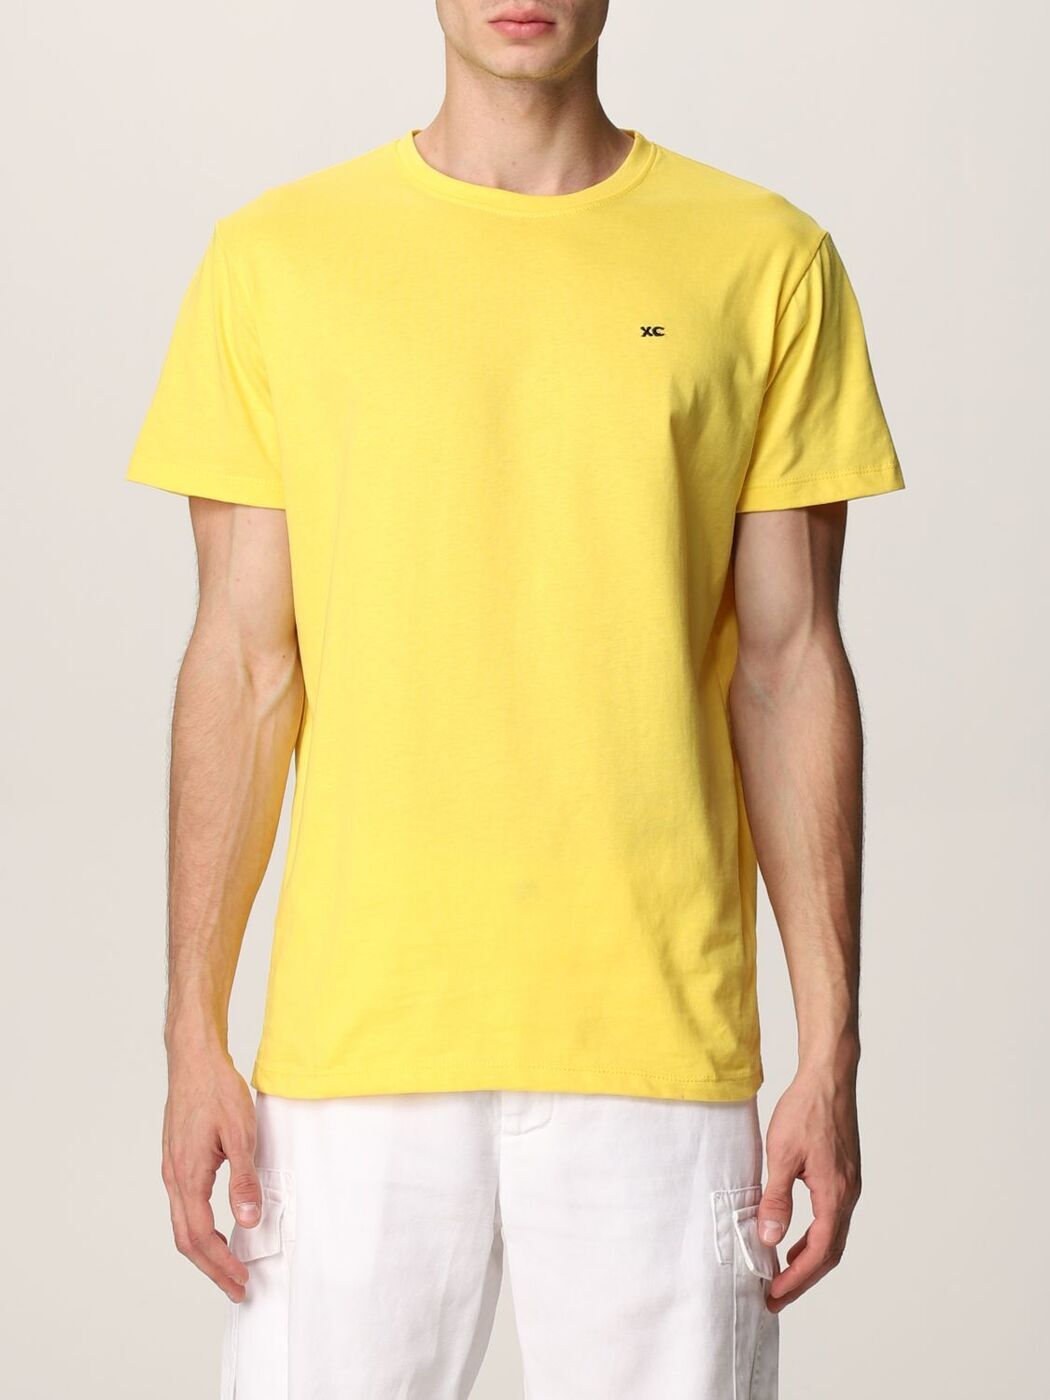 【土日限定クーポン配布中！】 XC クロスシー イエロー Yellow Tシャツ メンズ 春夏2021 004 【関税・送料無料】【ラッピング無料】 gi